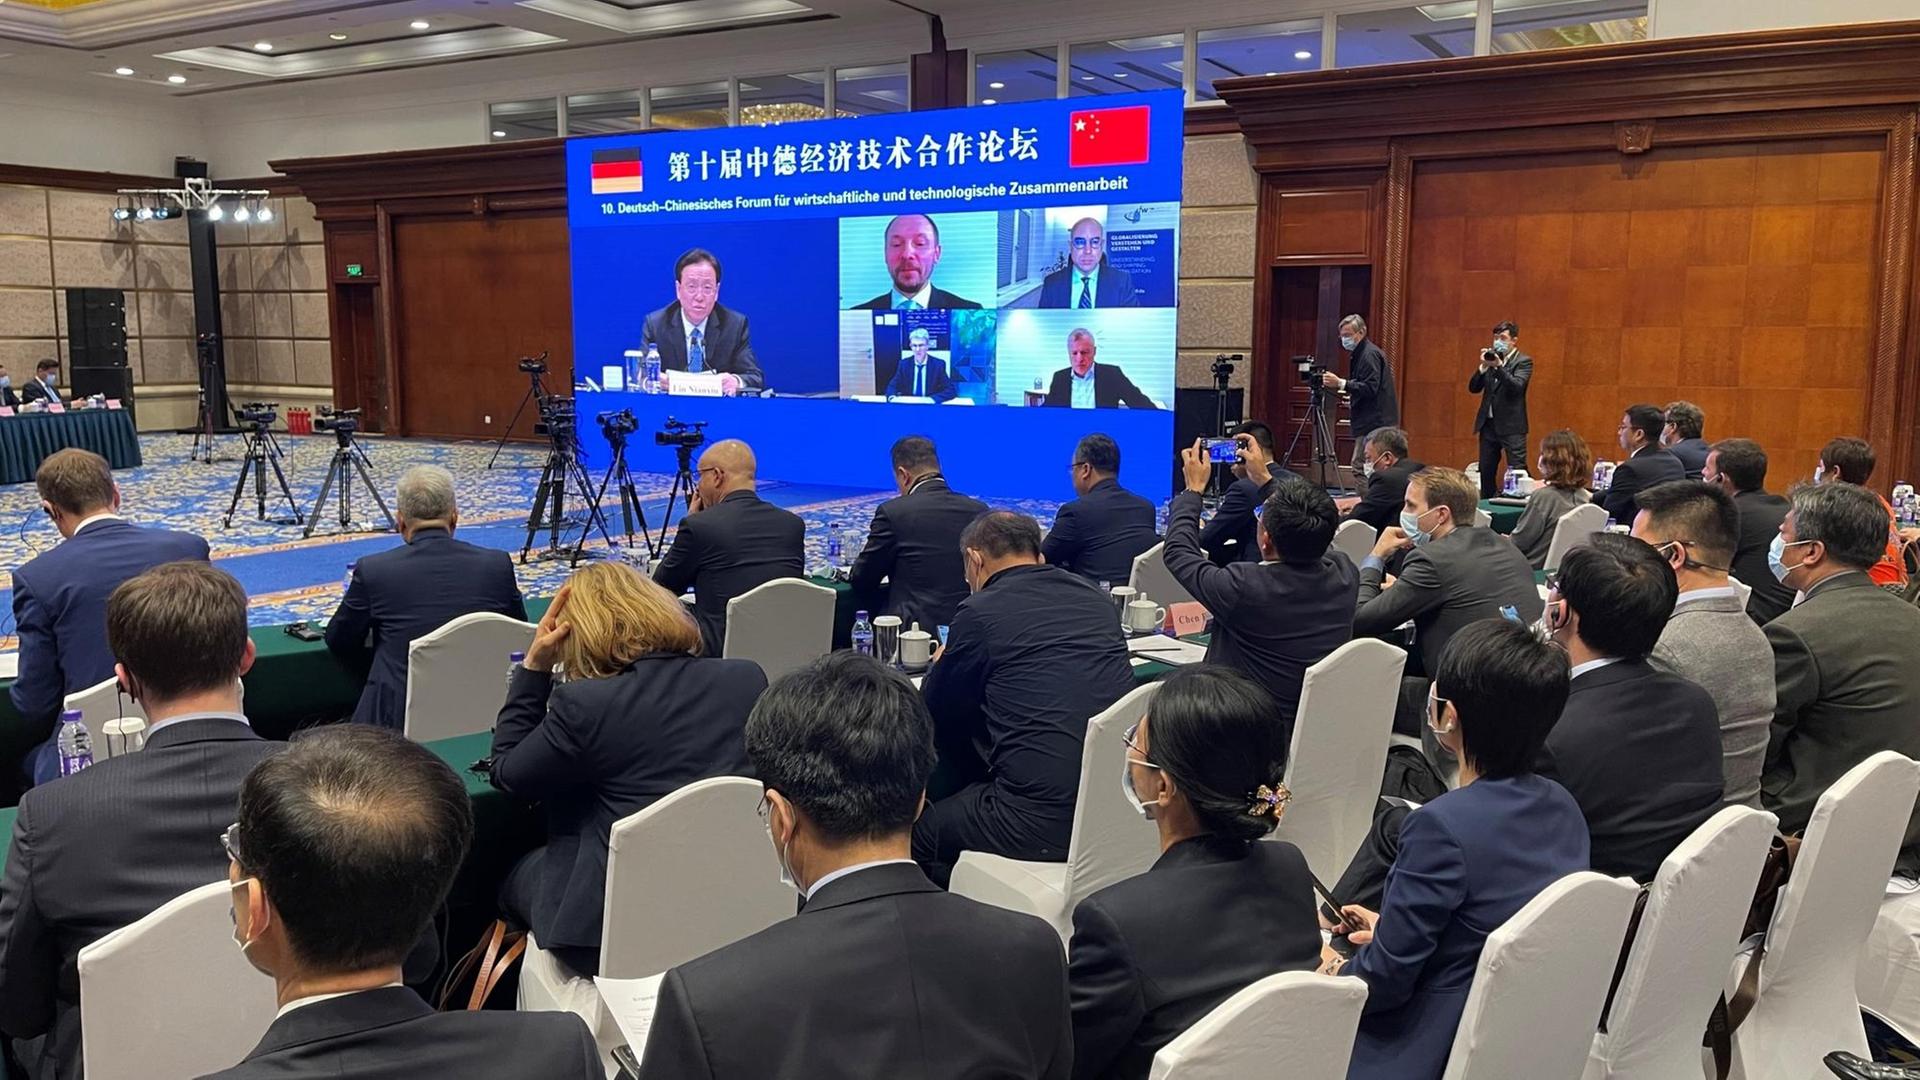 Aus Anlass der deutsch-chinesischen Regierungskonsultationen kamen in Peking rund 100 Unternehmensvertreter zusammen, um über die Wirtschaftsbeziehungen zu diskutieren. Auch aus Deutschland waren Teilnehmer zugeschaltet.